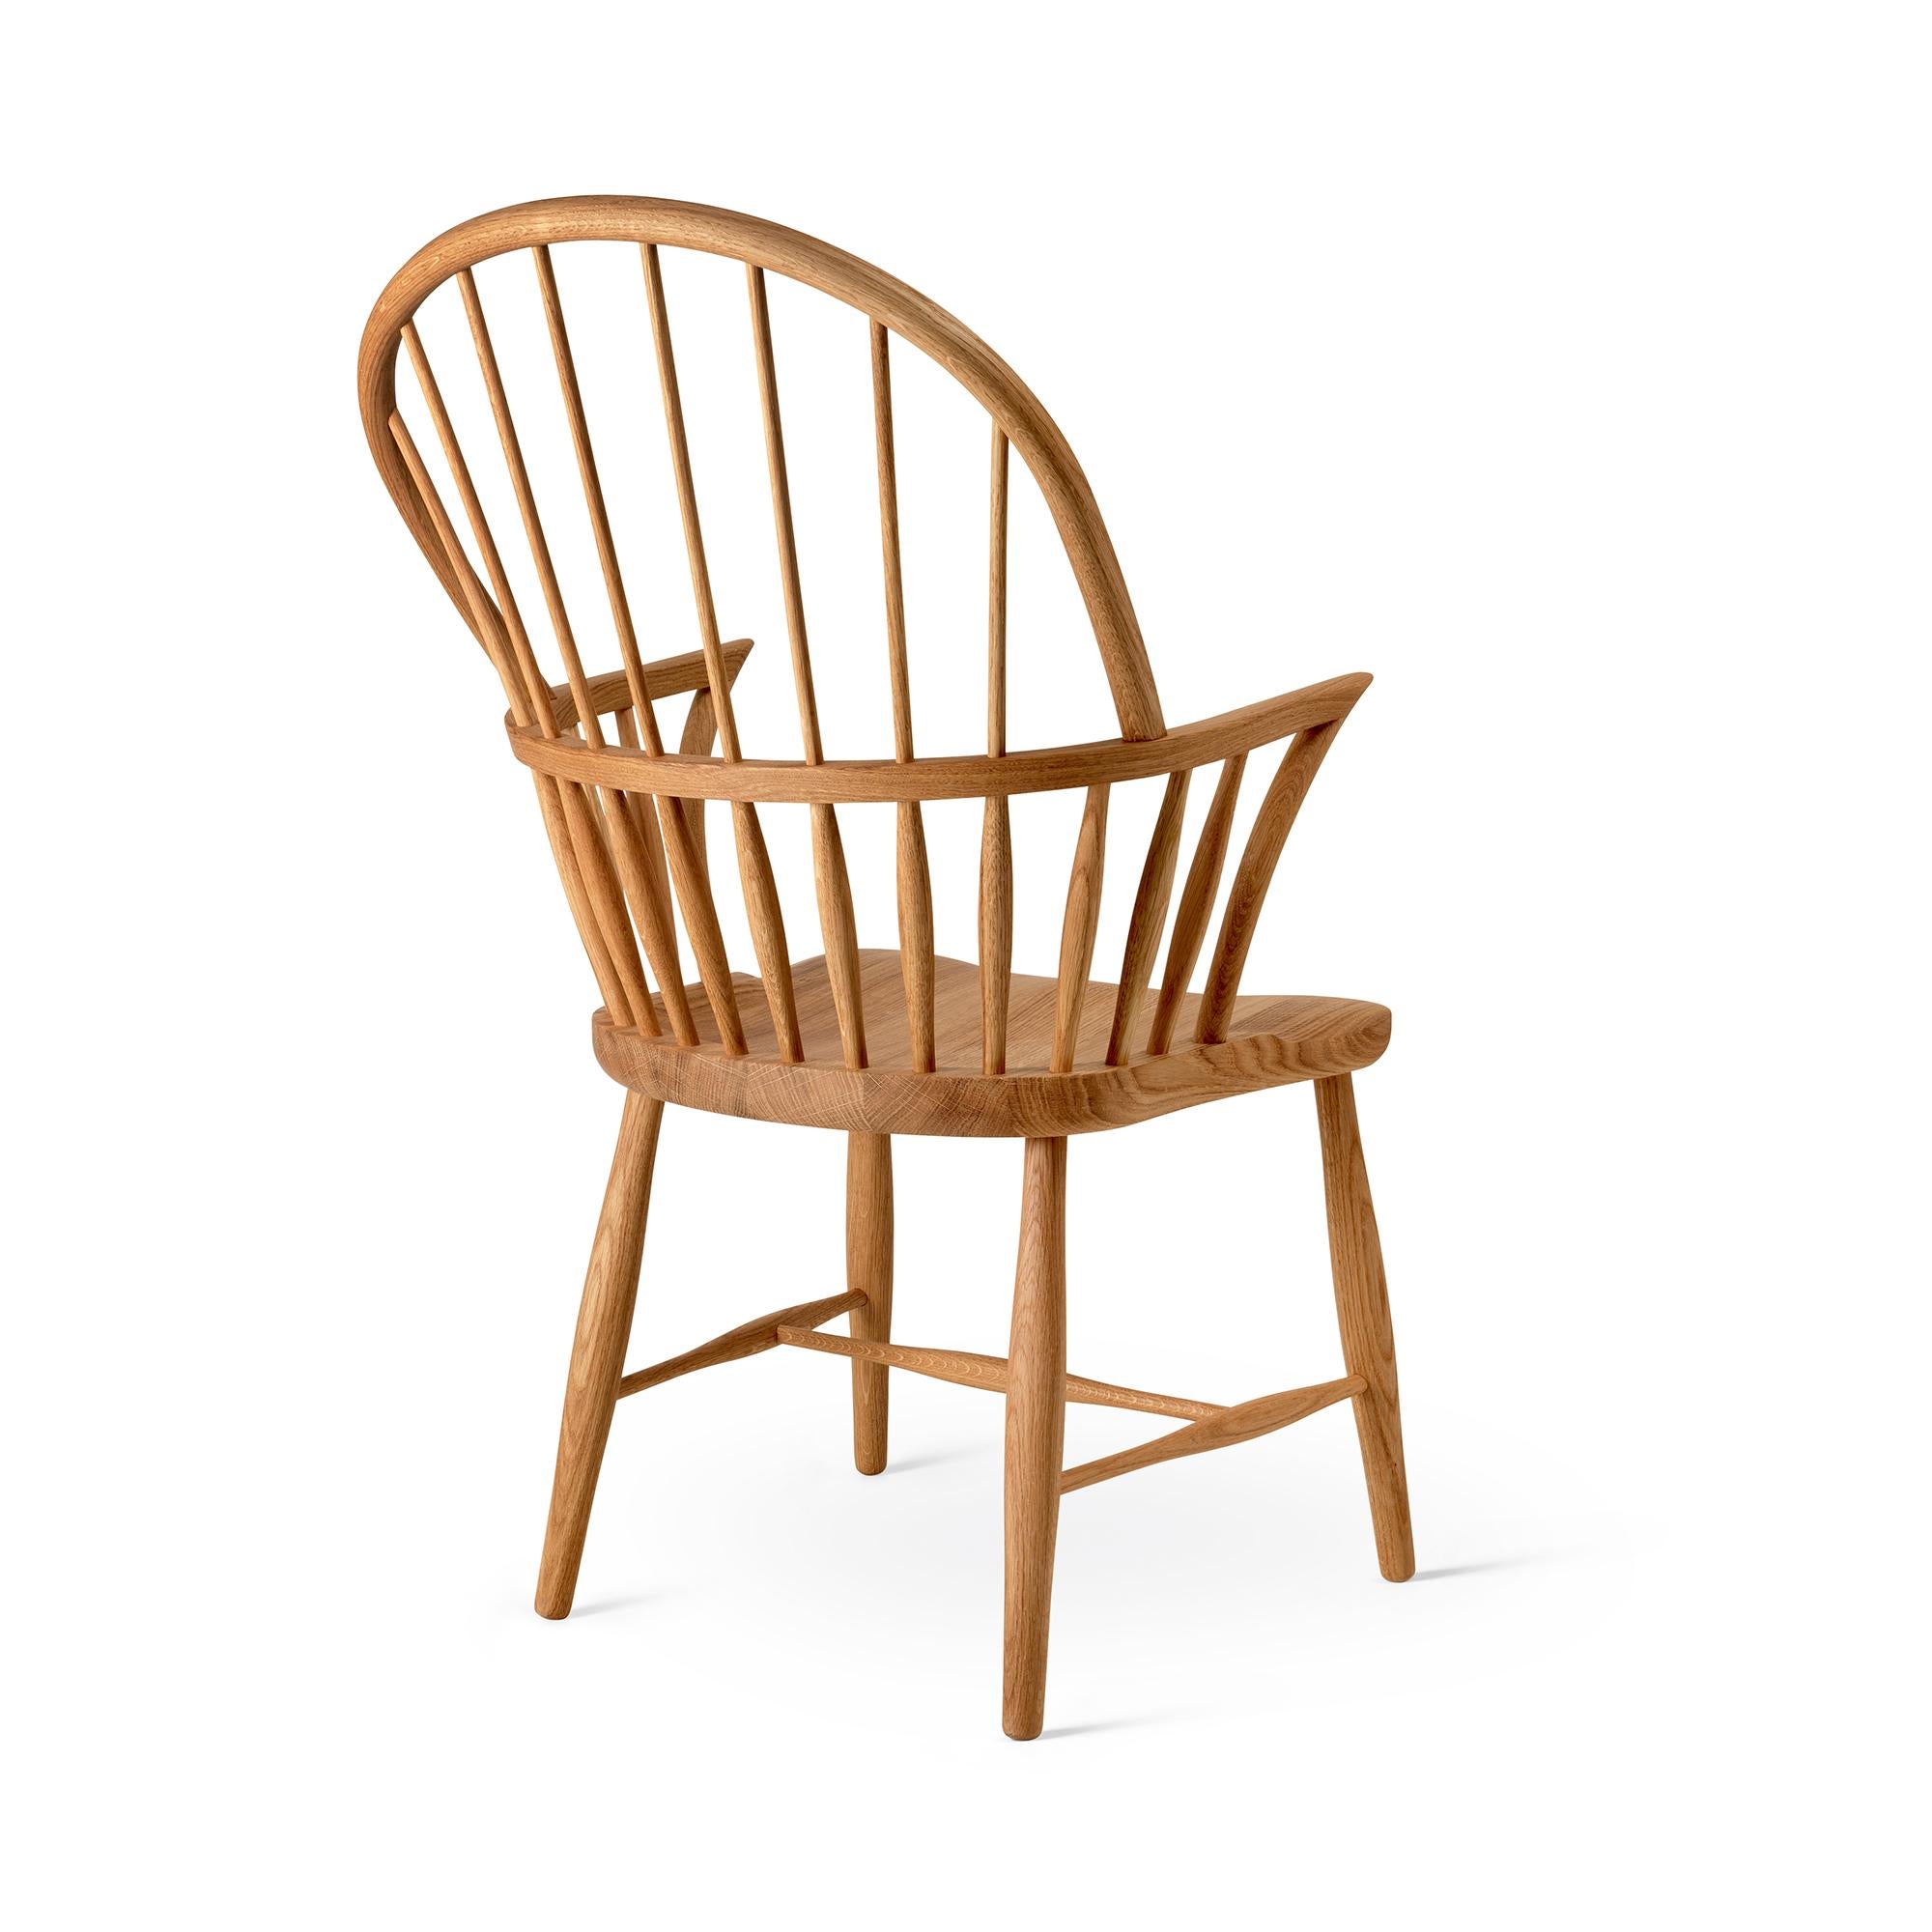 Mid-Century Modern Frits Henningsen 'FH38 Windsor' Chair in Oiled Oak for Carl Hansen & Son For Sale